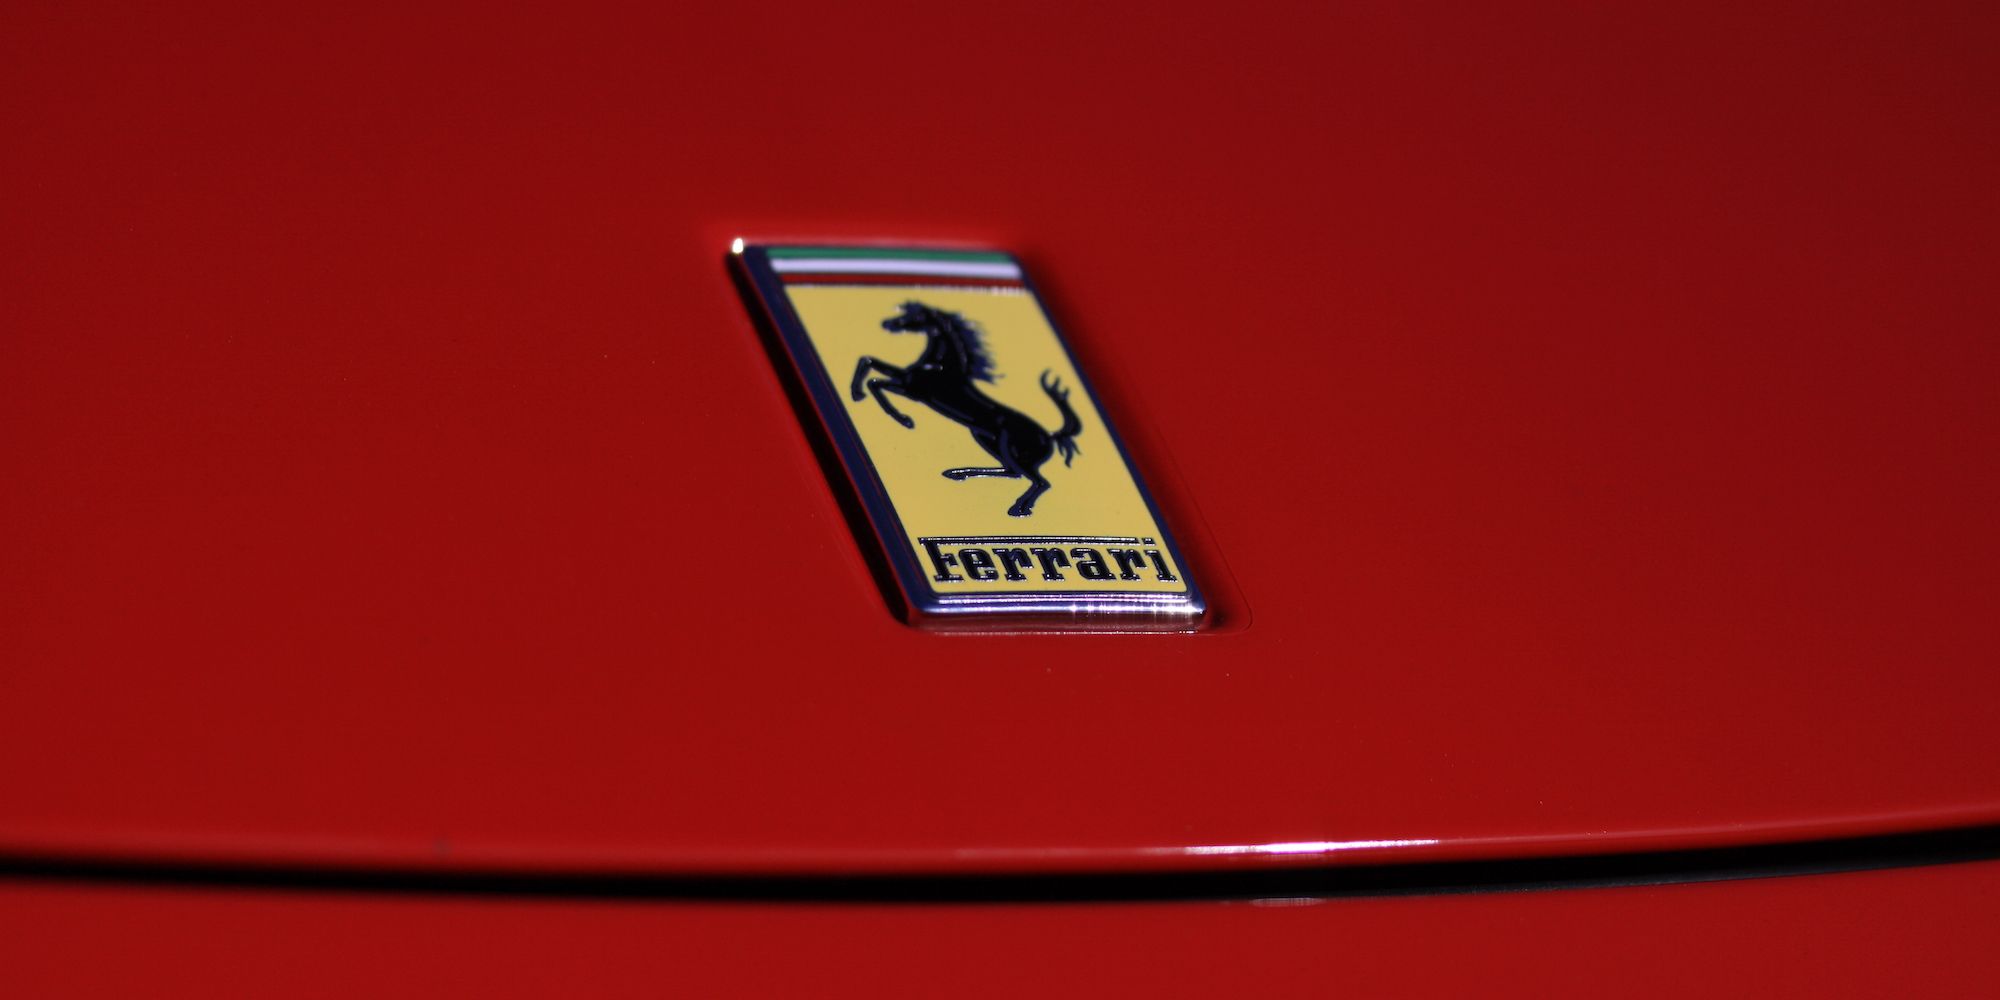 Ferrari prancing horse badge